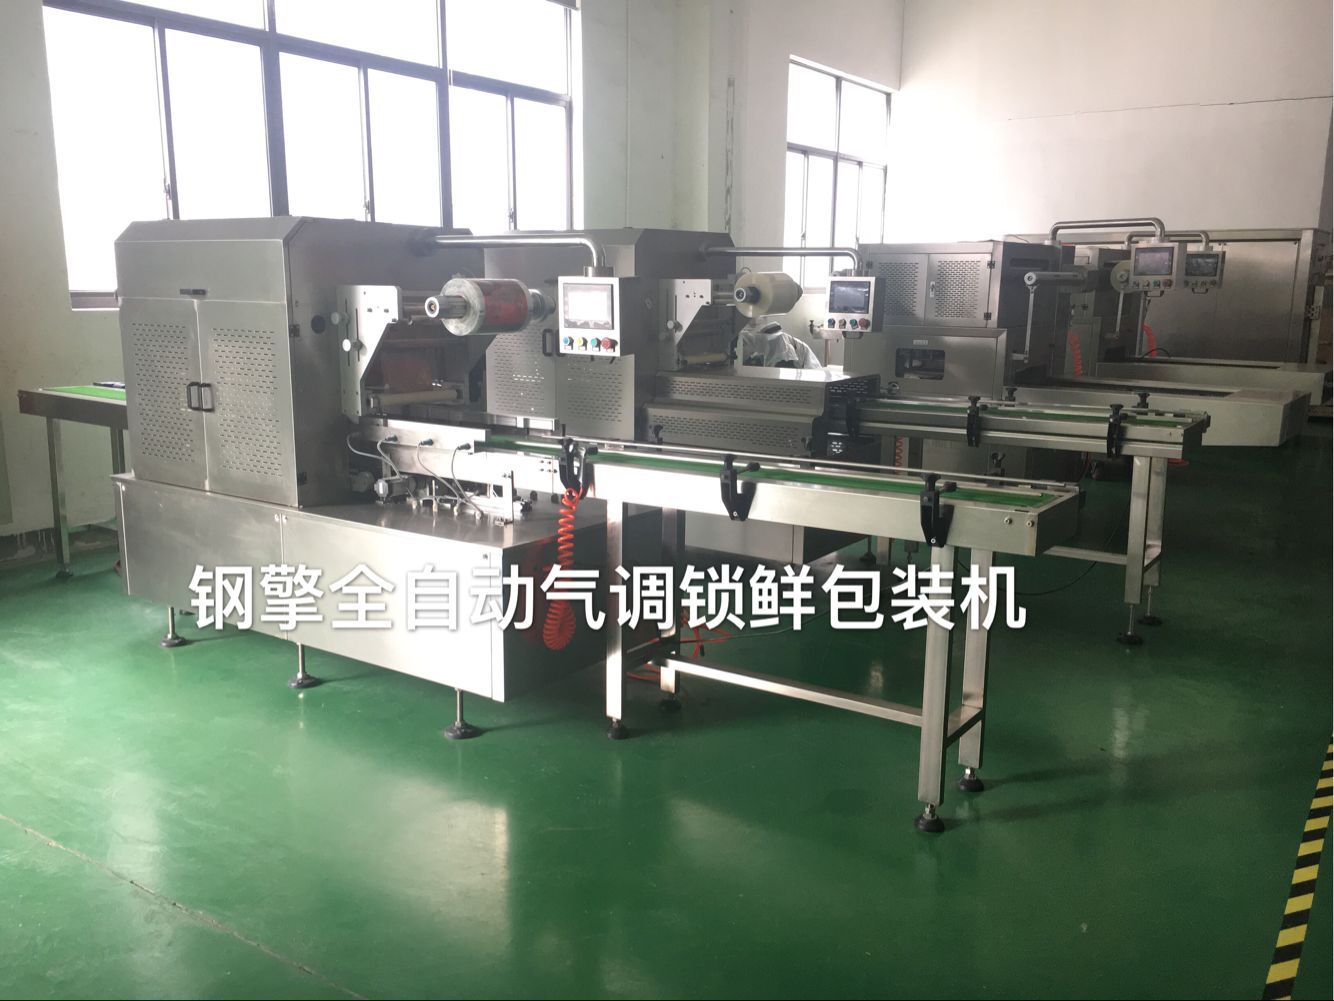 上海鋼擎機械制造有限公司